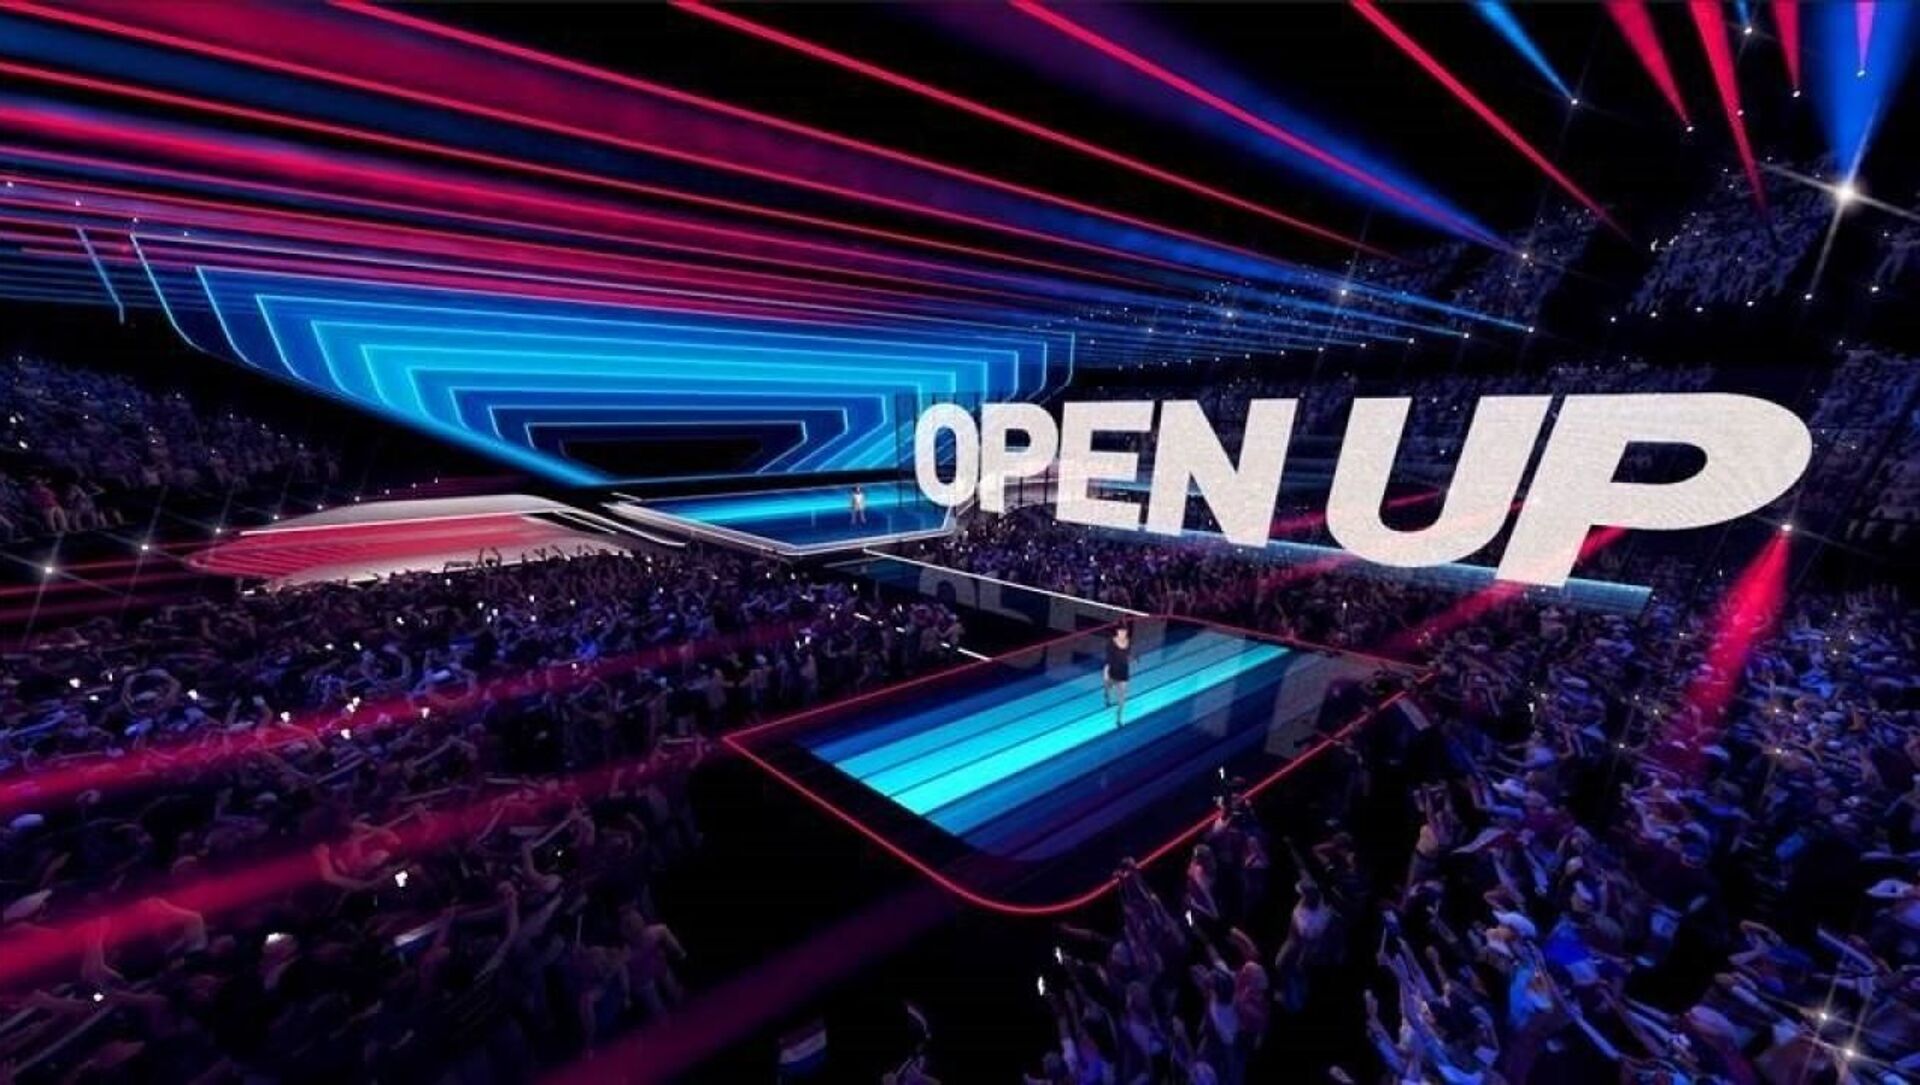 На сцене Евровидения в Роттердаме в 2021 году будет установлен полупрозрачный светодиодный экран - Sputnik Беларусь, 1920, 15.03.2021